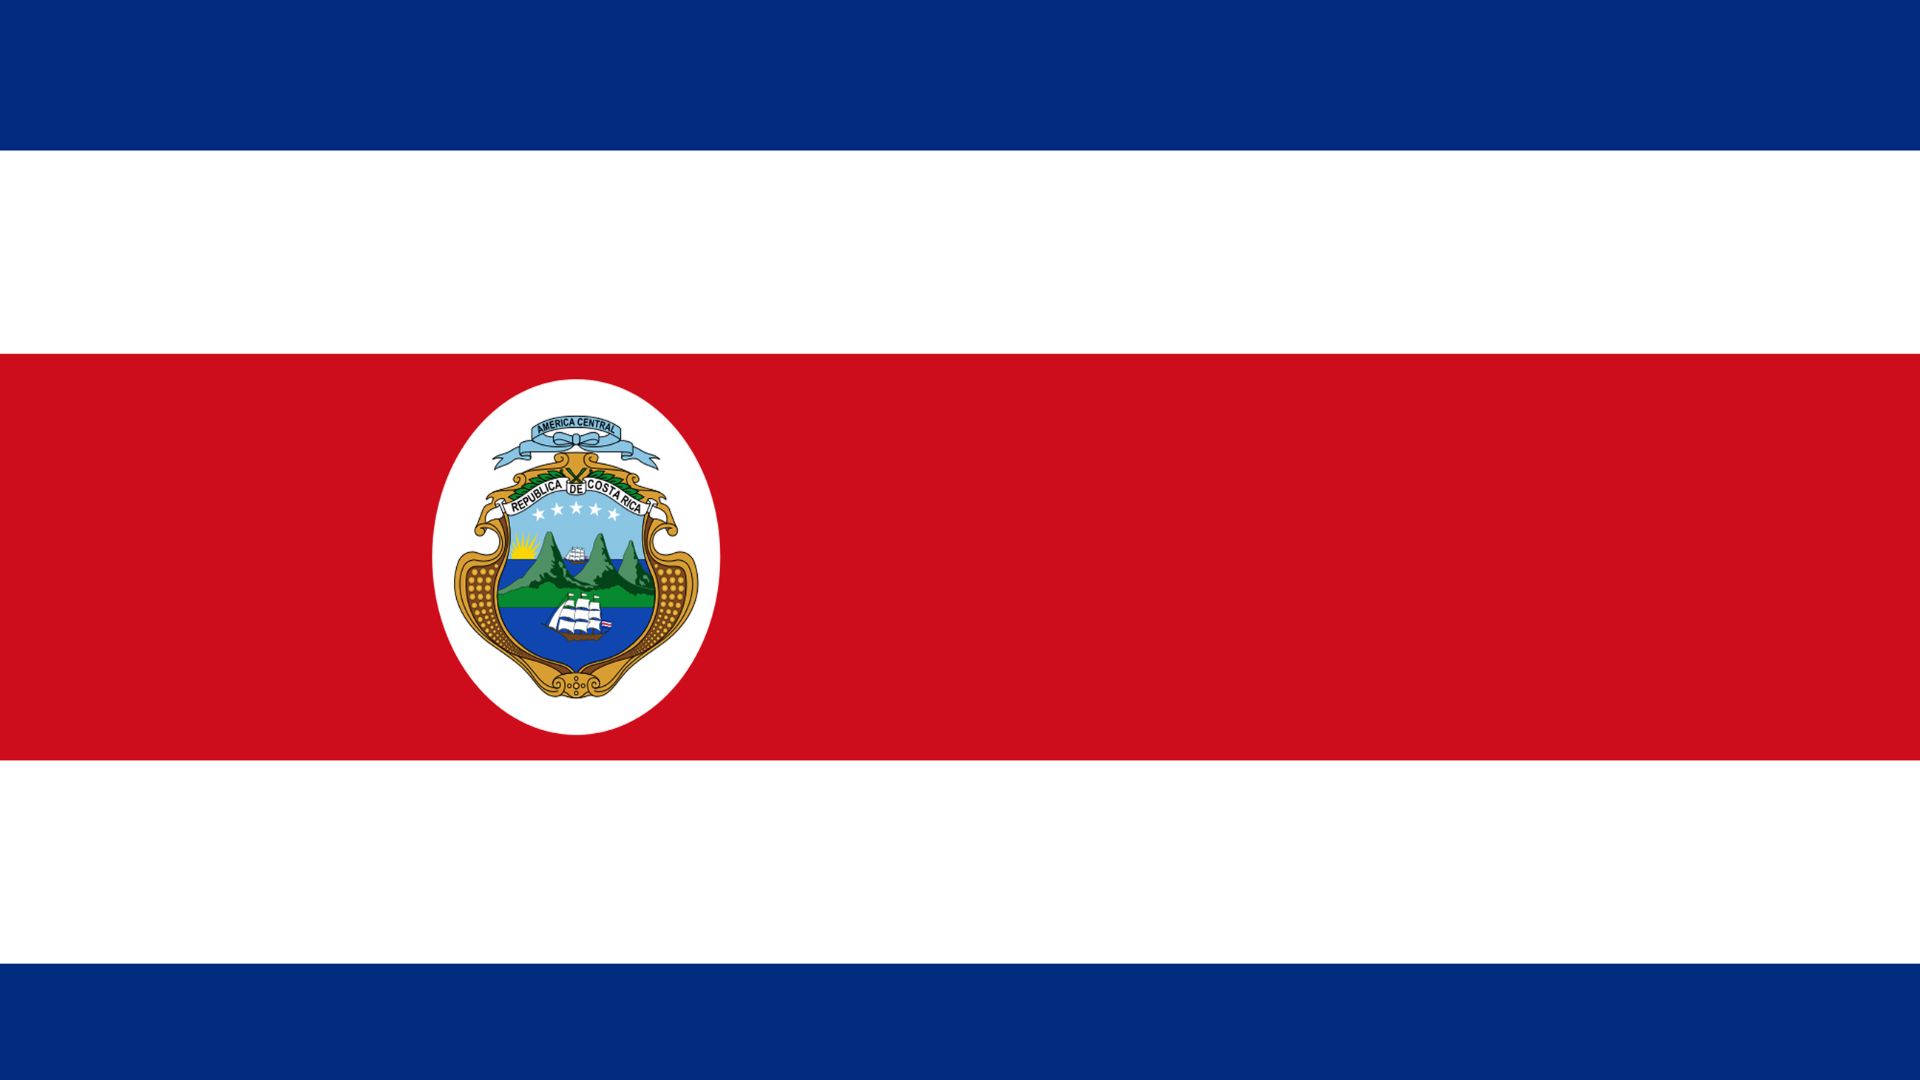 A bandeira da Costa Rica traz as cores azul, branco e vermelho. A cor azul simboliza o céu, a cor branca simboliza paz, a cor vermelha simboliza o sangue derramado pelos mártires e o brasão cheio de armas significa as lutas e guerras do país.